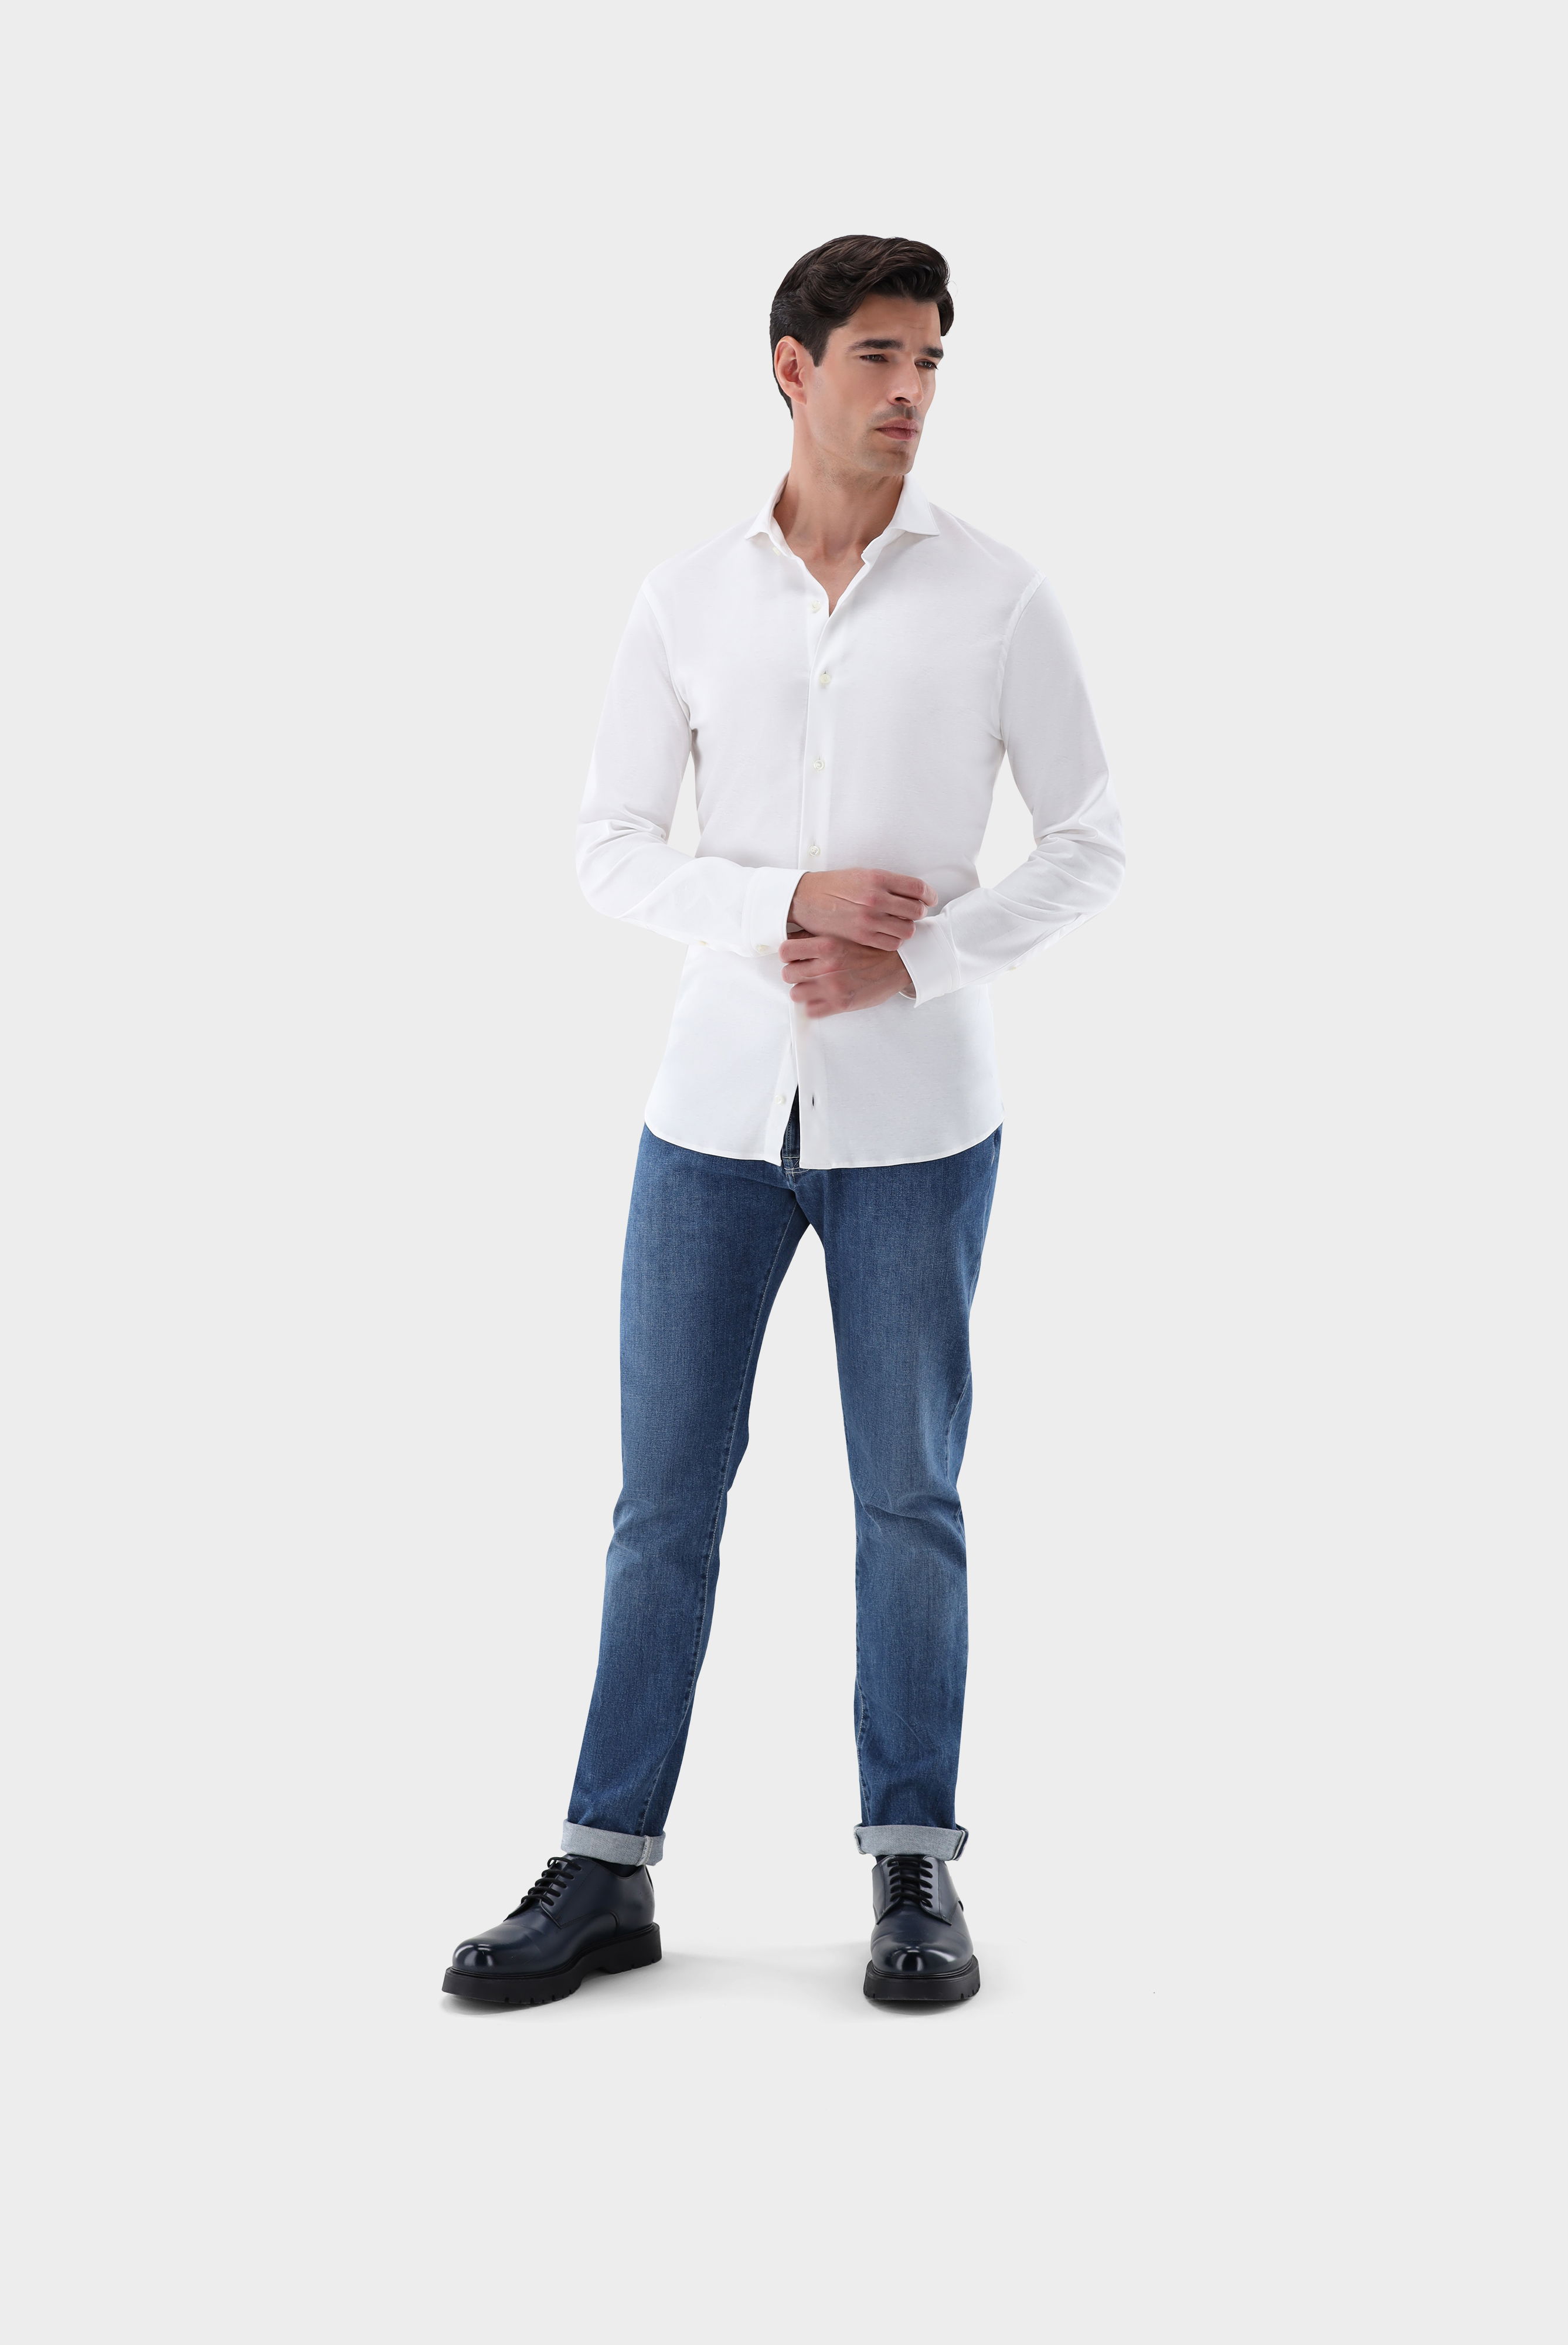 Jersey Hemden+Jersey Hemd aus Schweizer Baumwolle Slim Fit+20.1682.UC.180031.000.XL